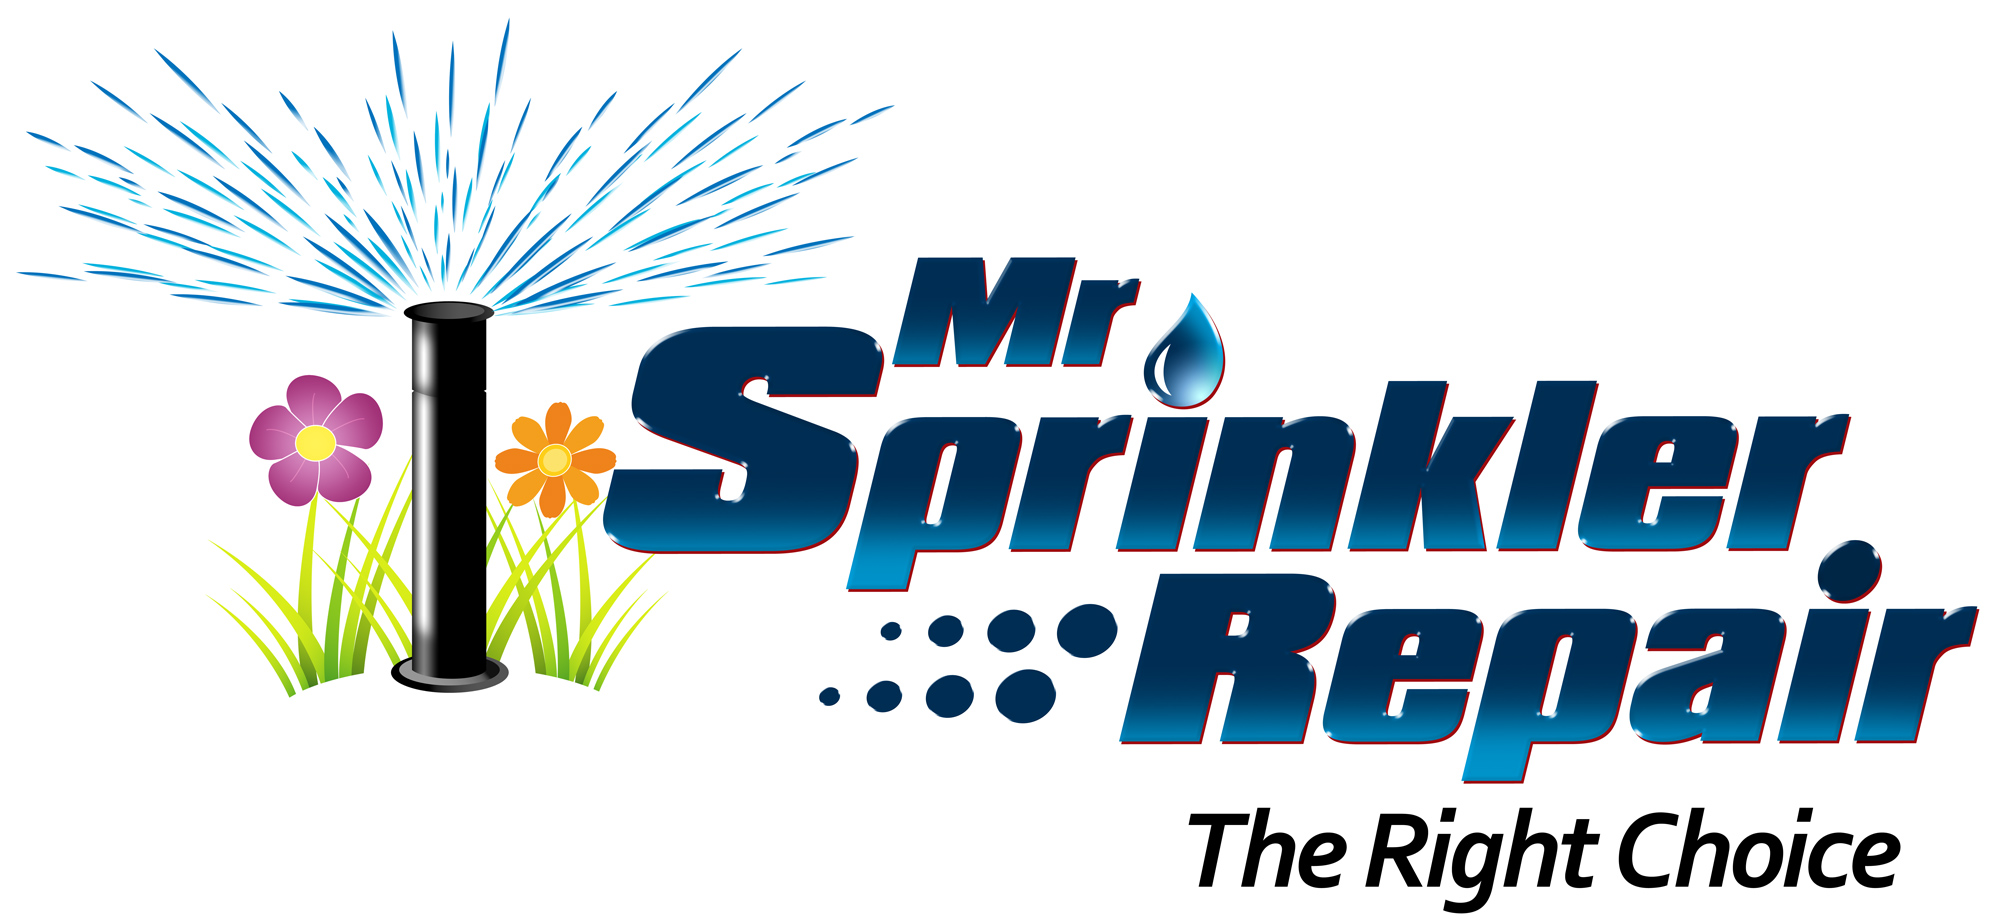 Sprinkler Repair Sprinkler Repair Fort Worth  | FW Irrigation Repair | Fort Worth Sprinkler Repair